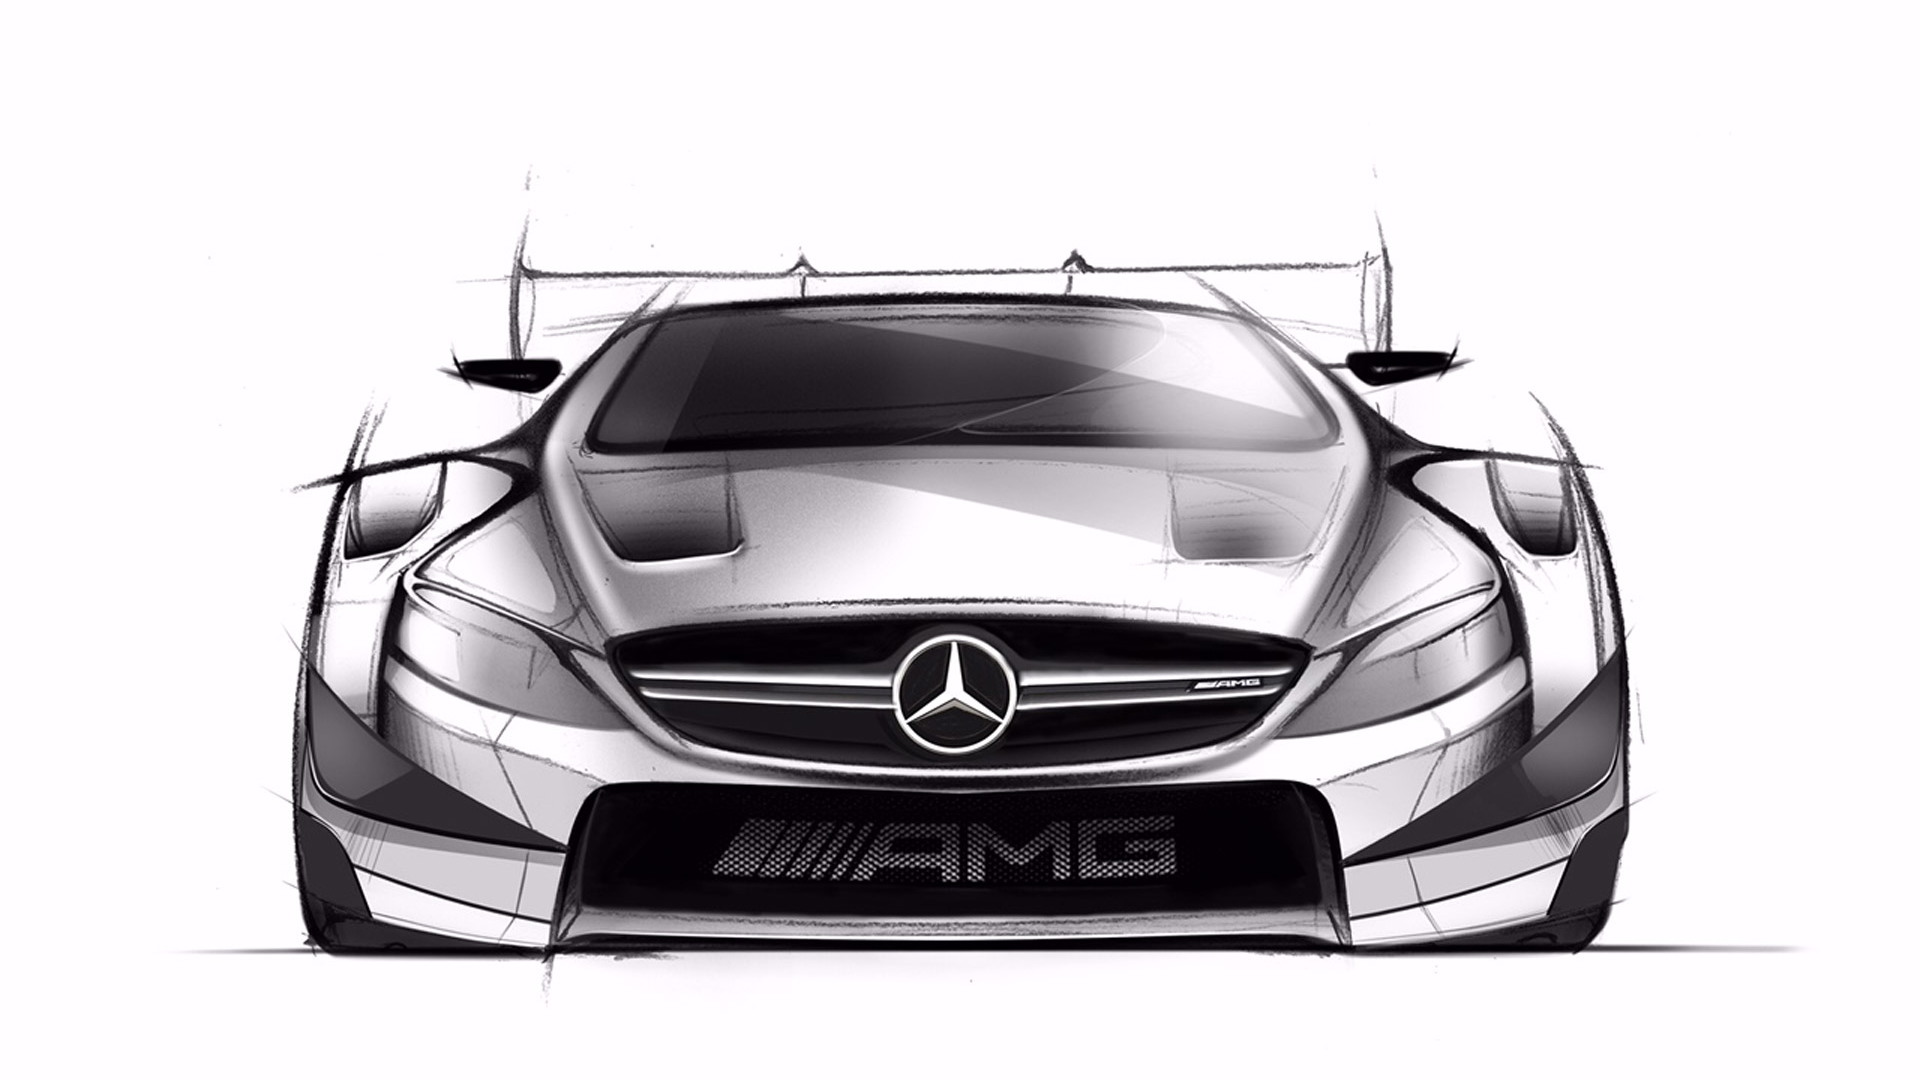 Teaser for 2016 Mercedes-AMG C63 DTM race car